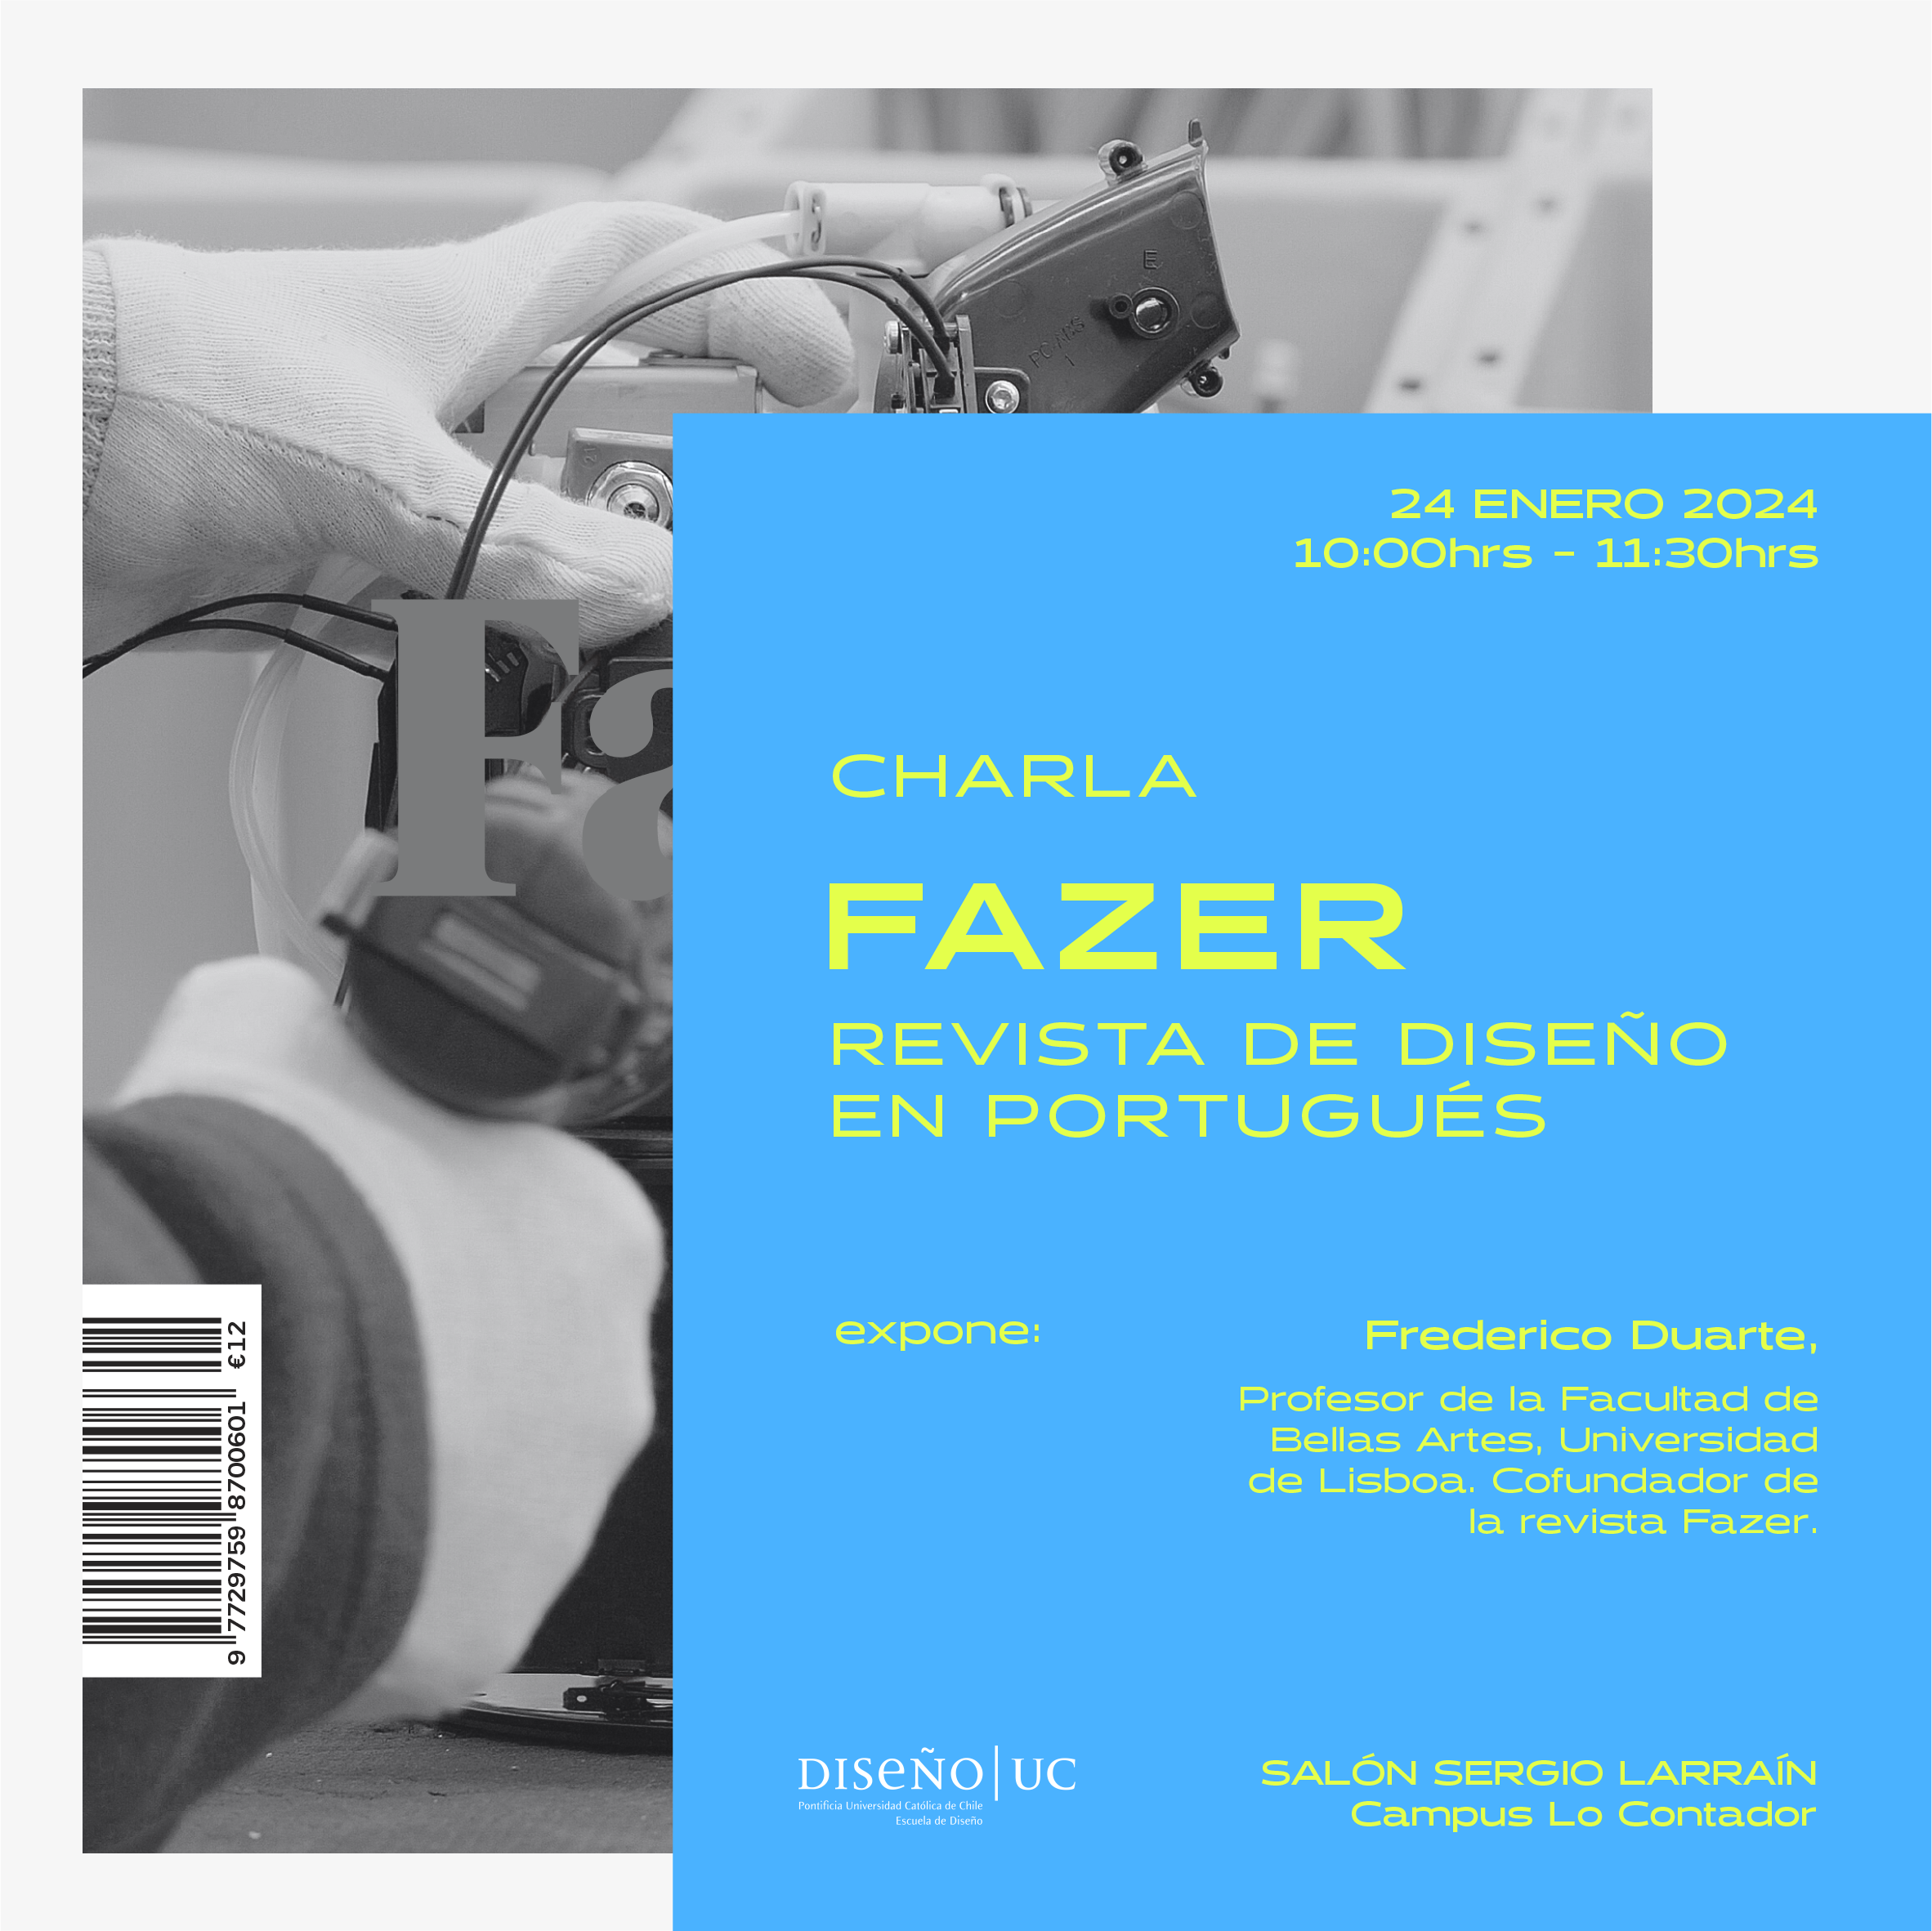 CHARLA | FAZER, UNA REVISTA DE DISEÑO PORTUGUÉS